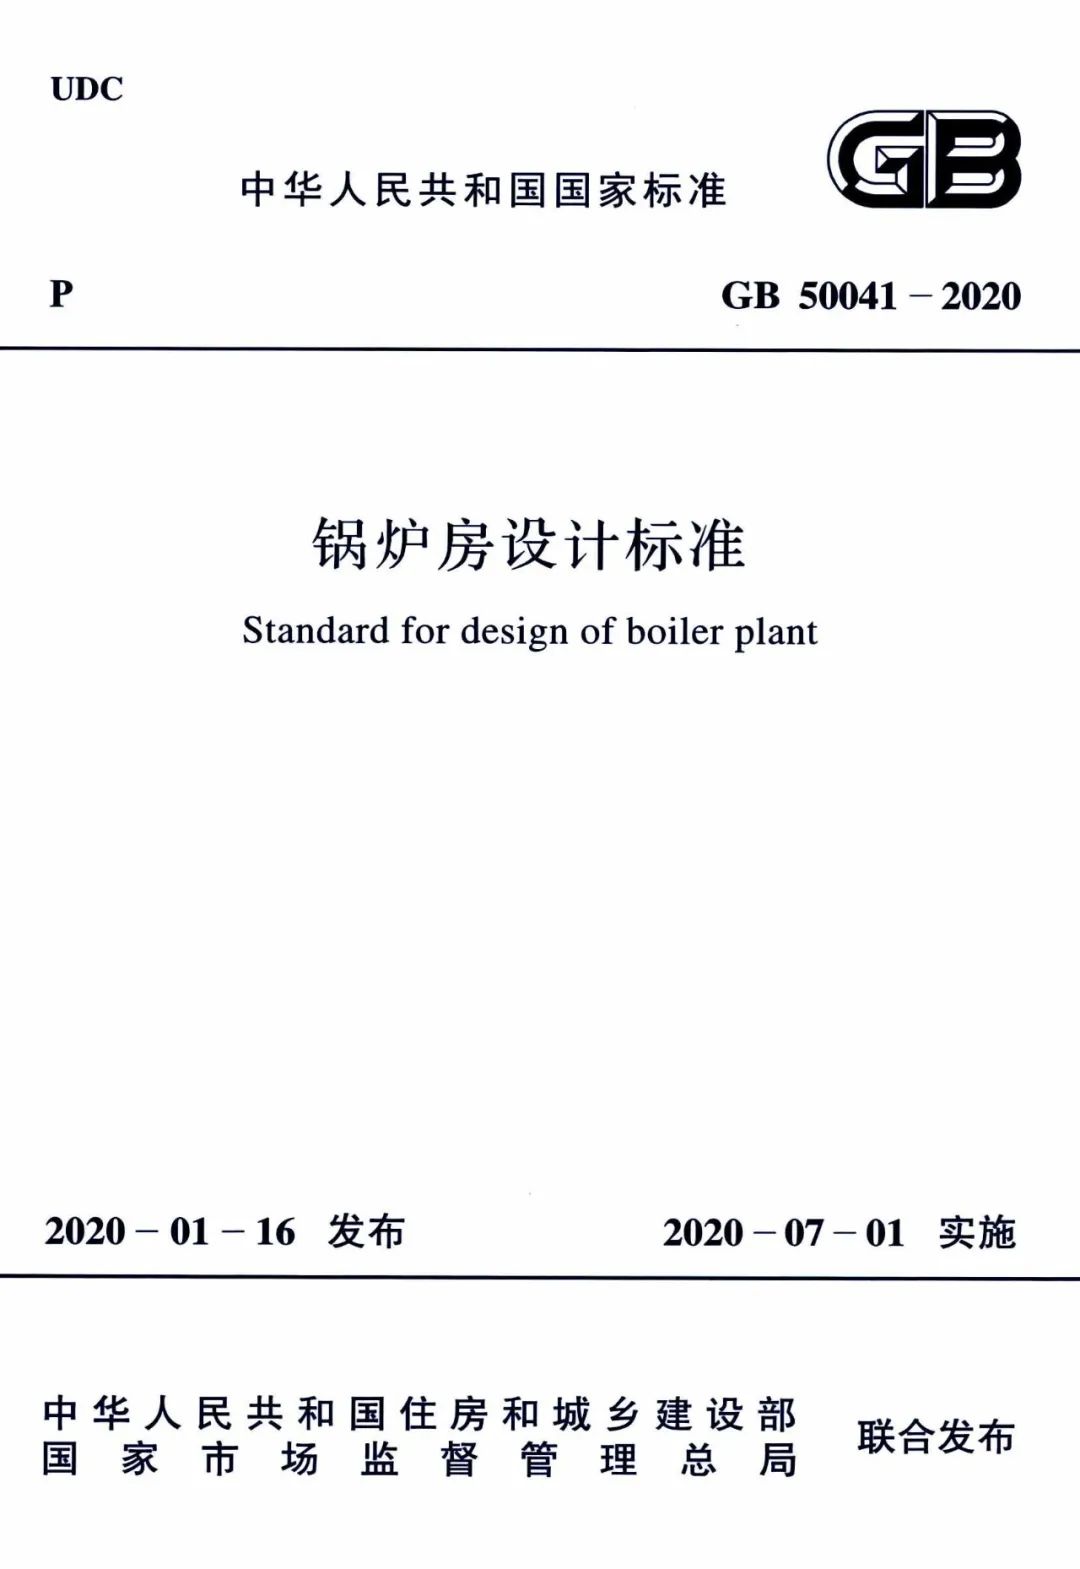 锅炉房设计标准 GB 50041-2020(图1)